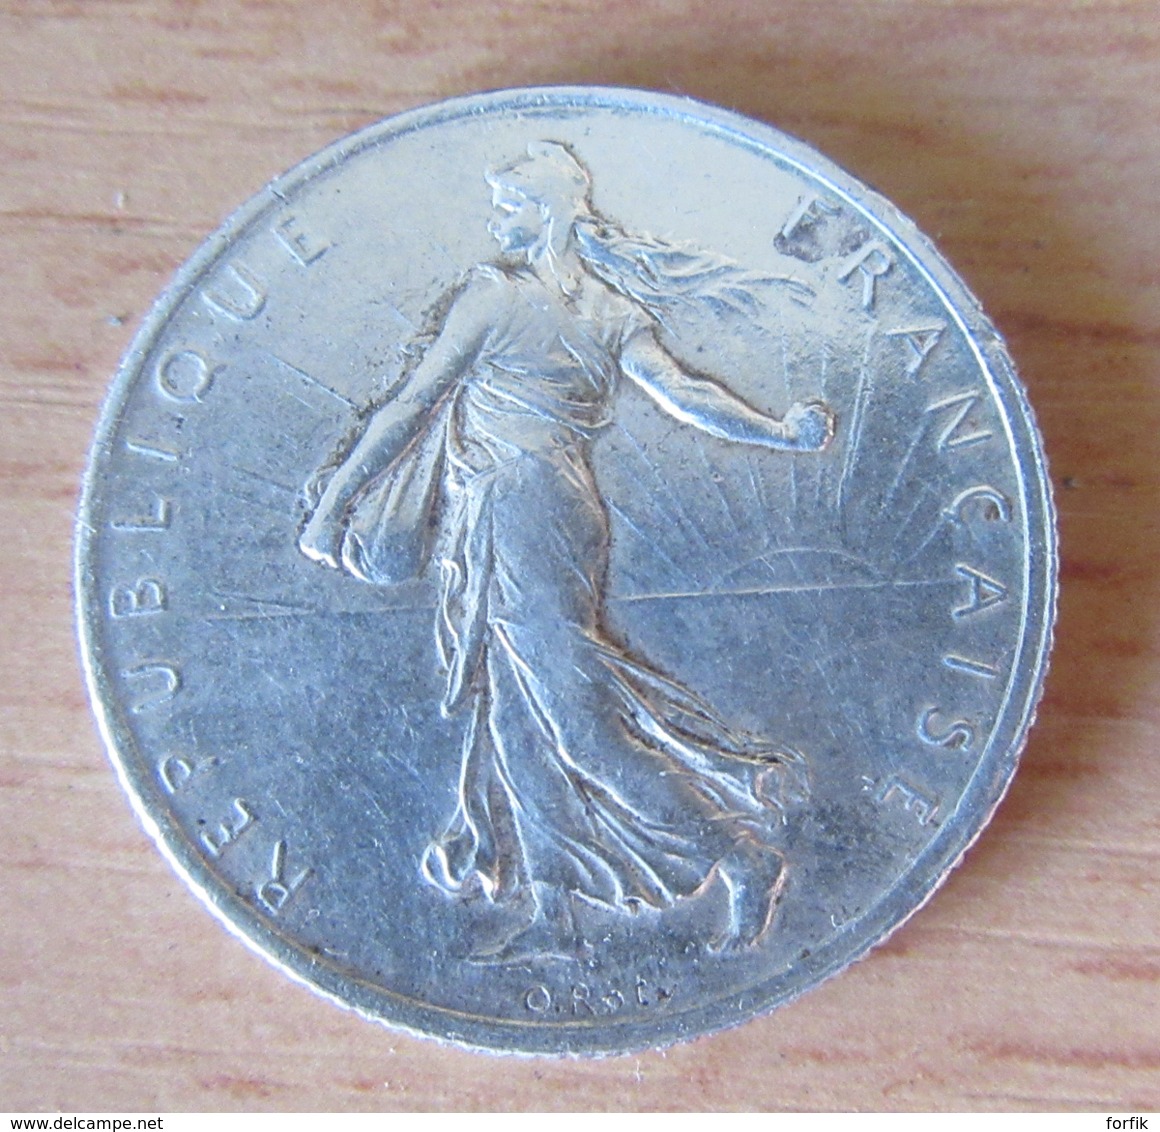 France - 5 Monnaies 2 Francs Semeuse Argent 1898 à 1914 - TB à SUP - Achat immédiat